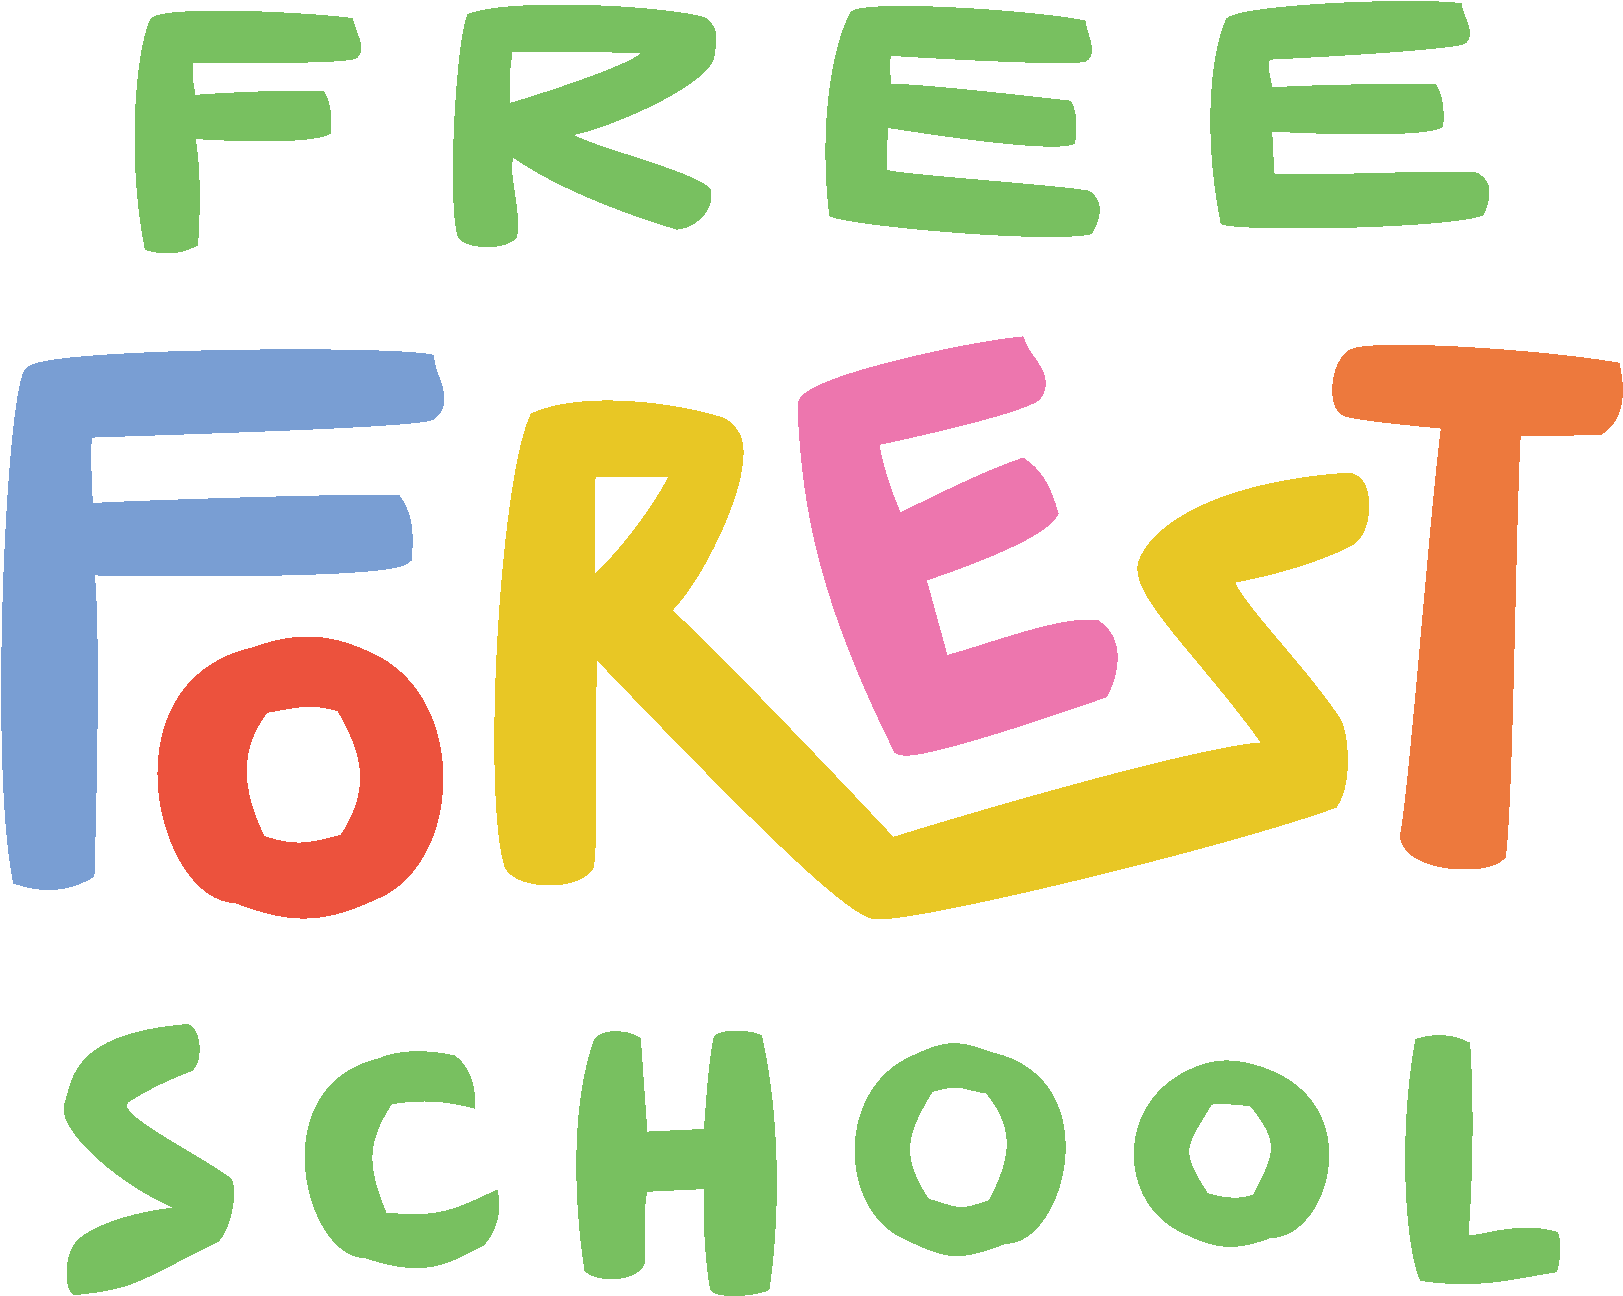 Free Forest School Logo (1708x1352)